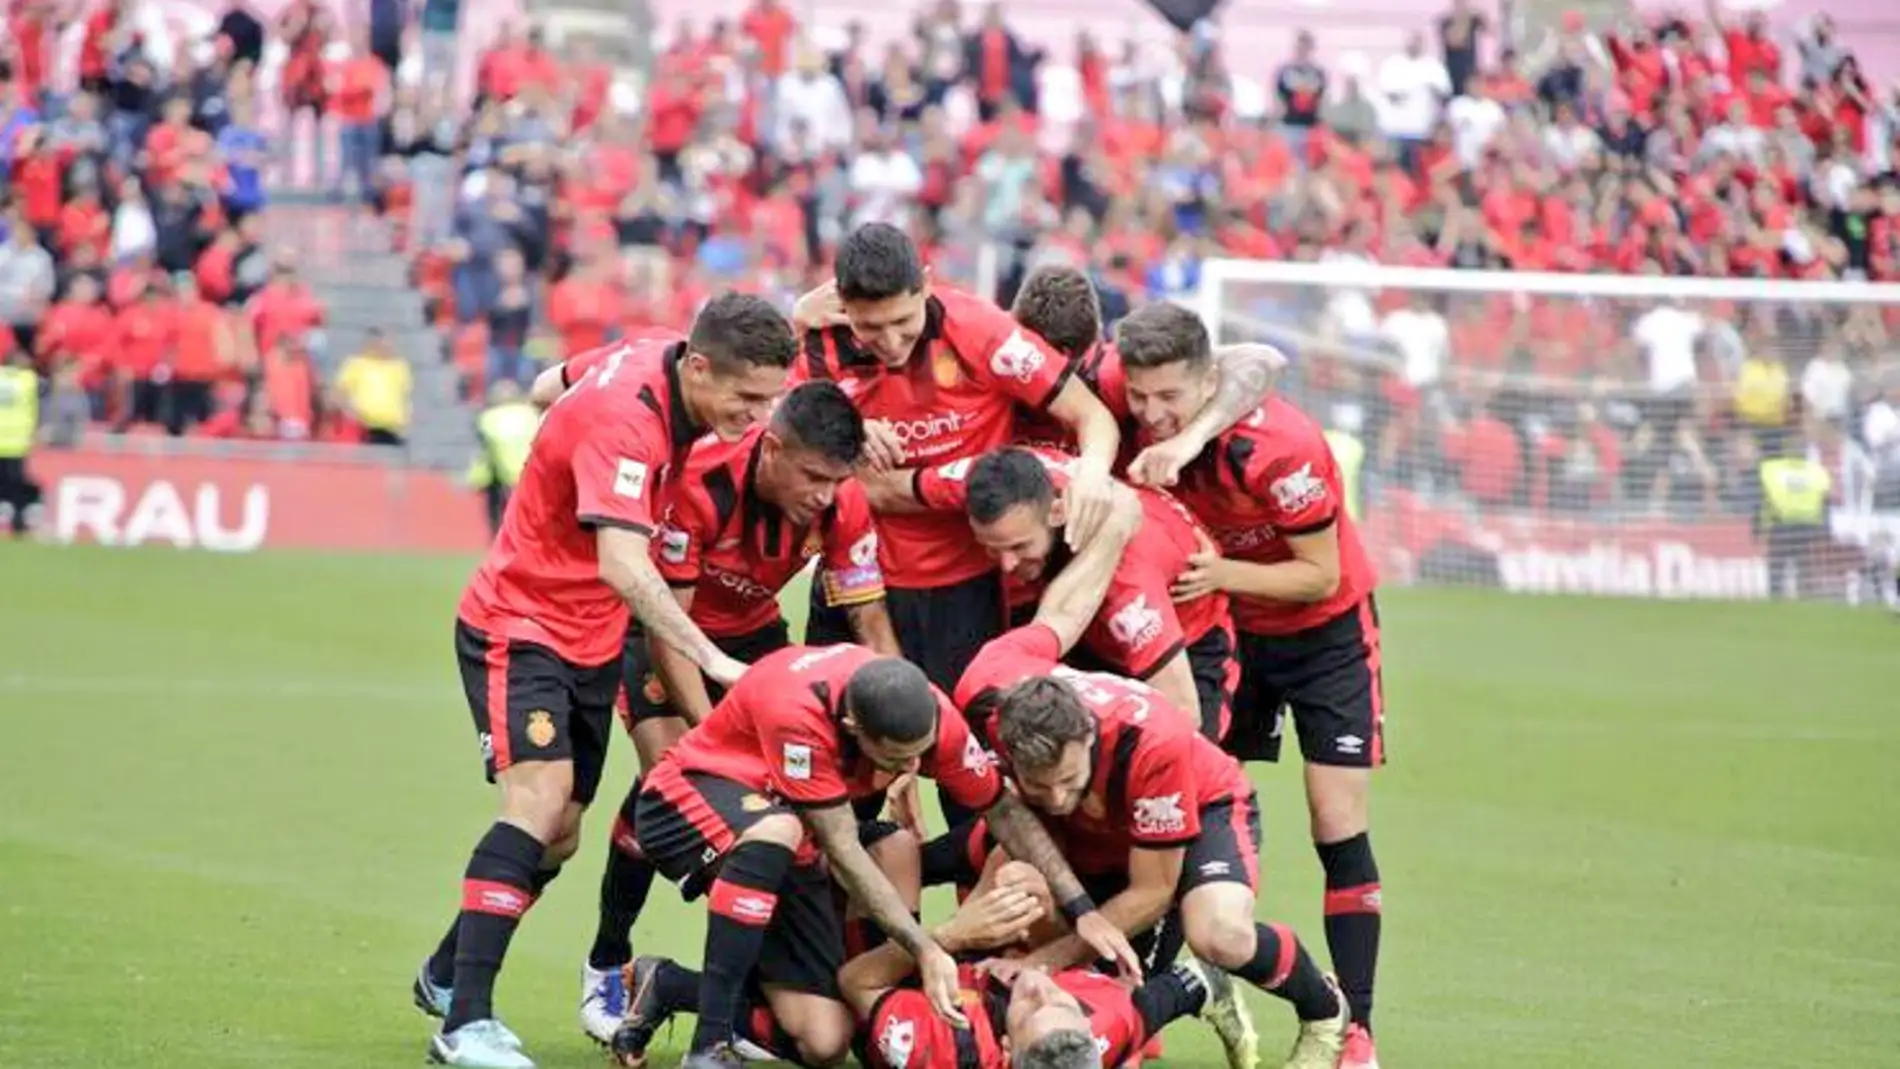 Los jugadores del RCD Mallorca celebran un gol.